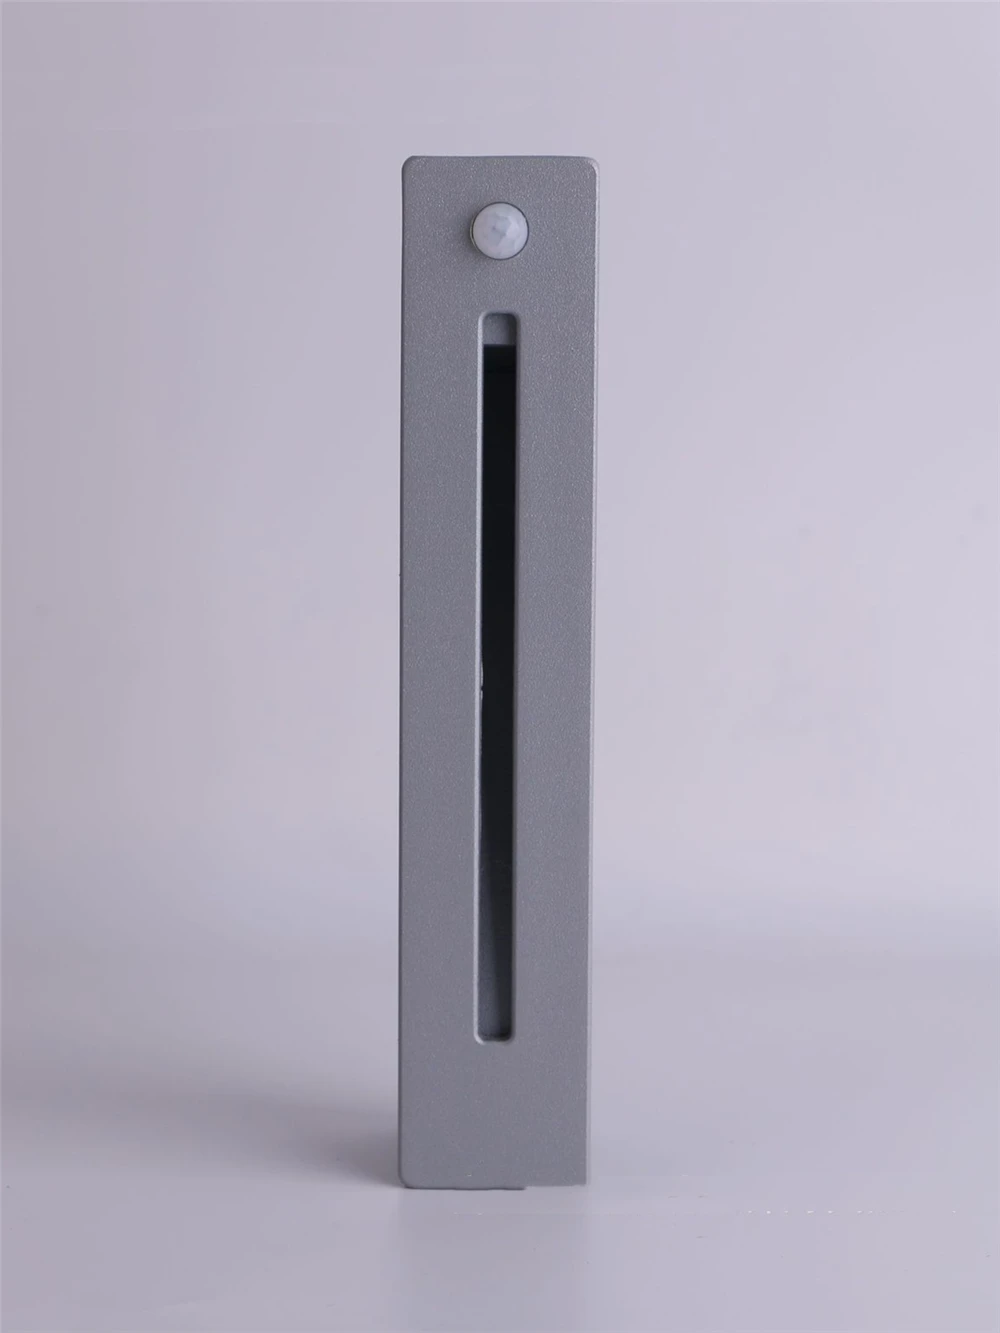 Уличный сенсорный светильник 2-3w CREE светодиодный наружный настенный светильник черный/серебристый/белый/серый - Испускаемый цвет: silver one